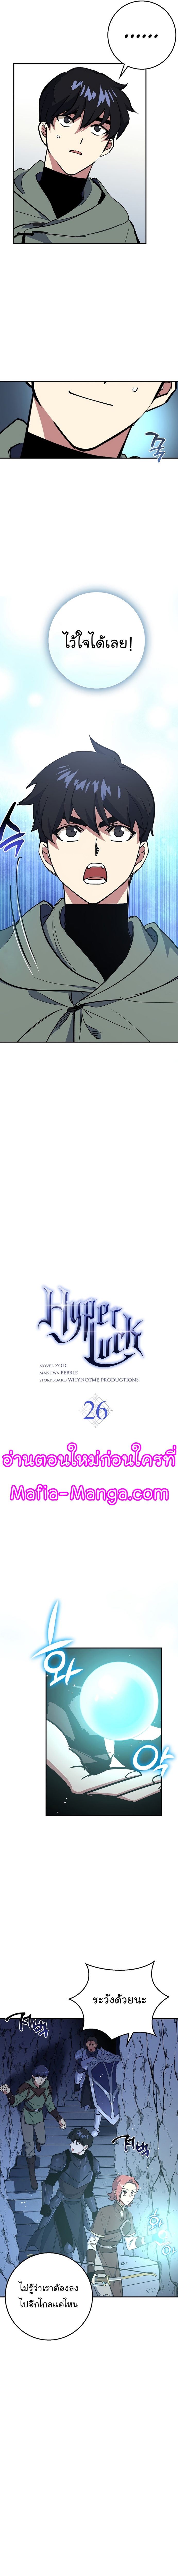 Hyper Luck04